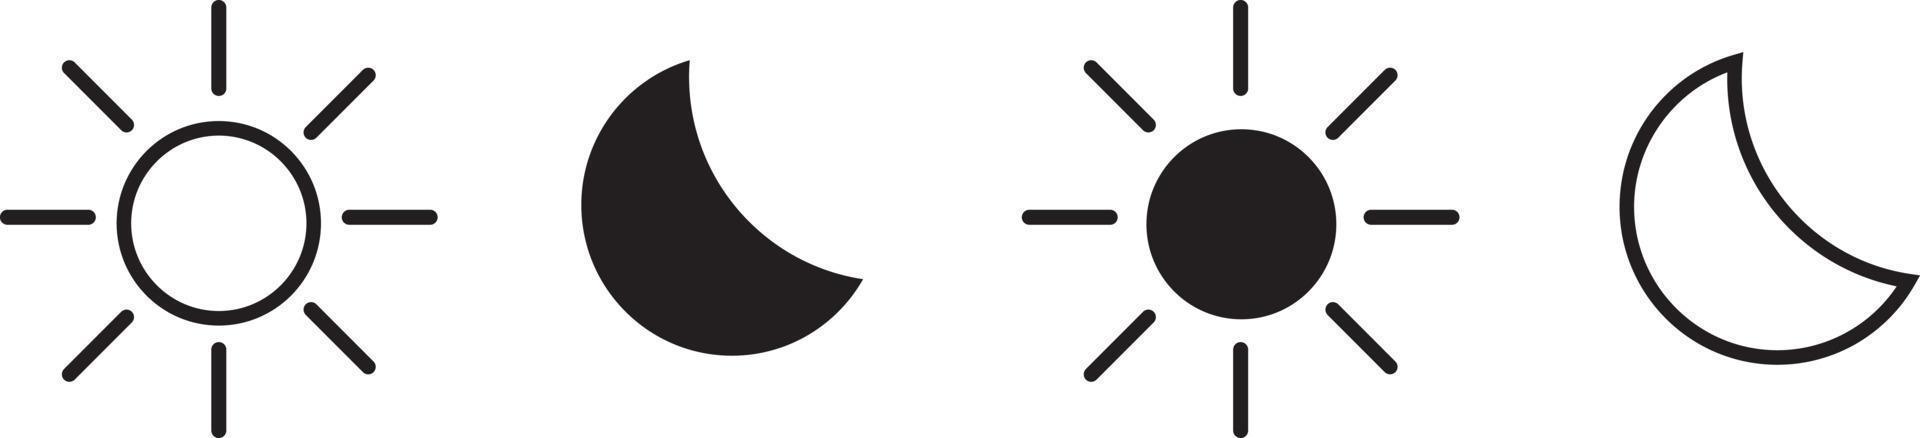 Hell- und Dunkelmodus-Tasten-Vektor-Set. isolierte helle, dunkle, runde Ikonen des Nachtmodus auf weißem Hintergrund. UI-Design für Website oder App. Farbversion Schaltersymbole. flache Abbildung vektor